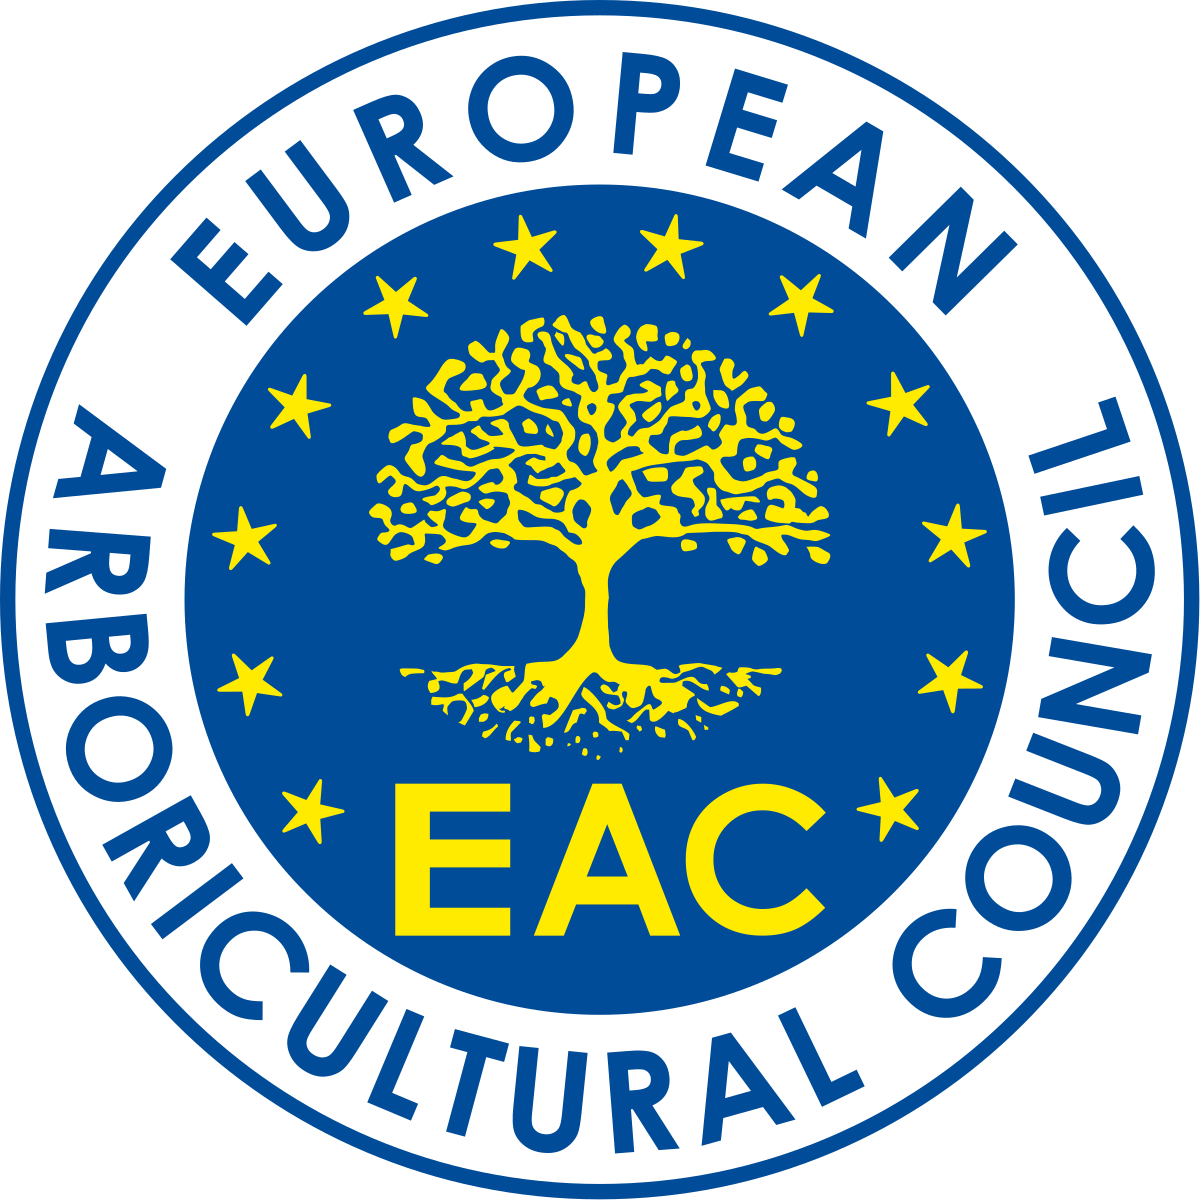 The European Arboricultural Council logo